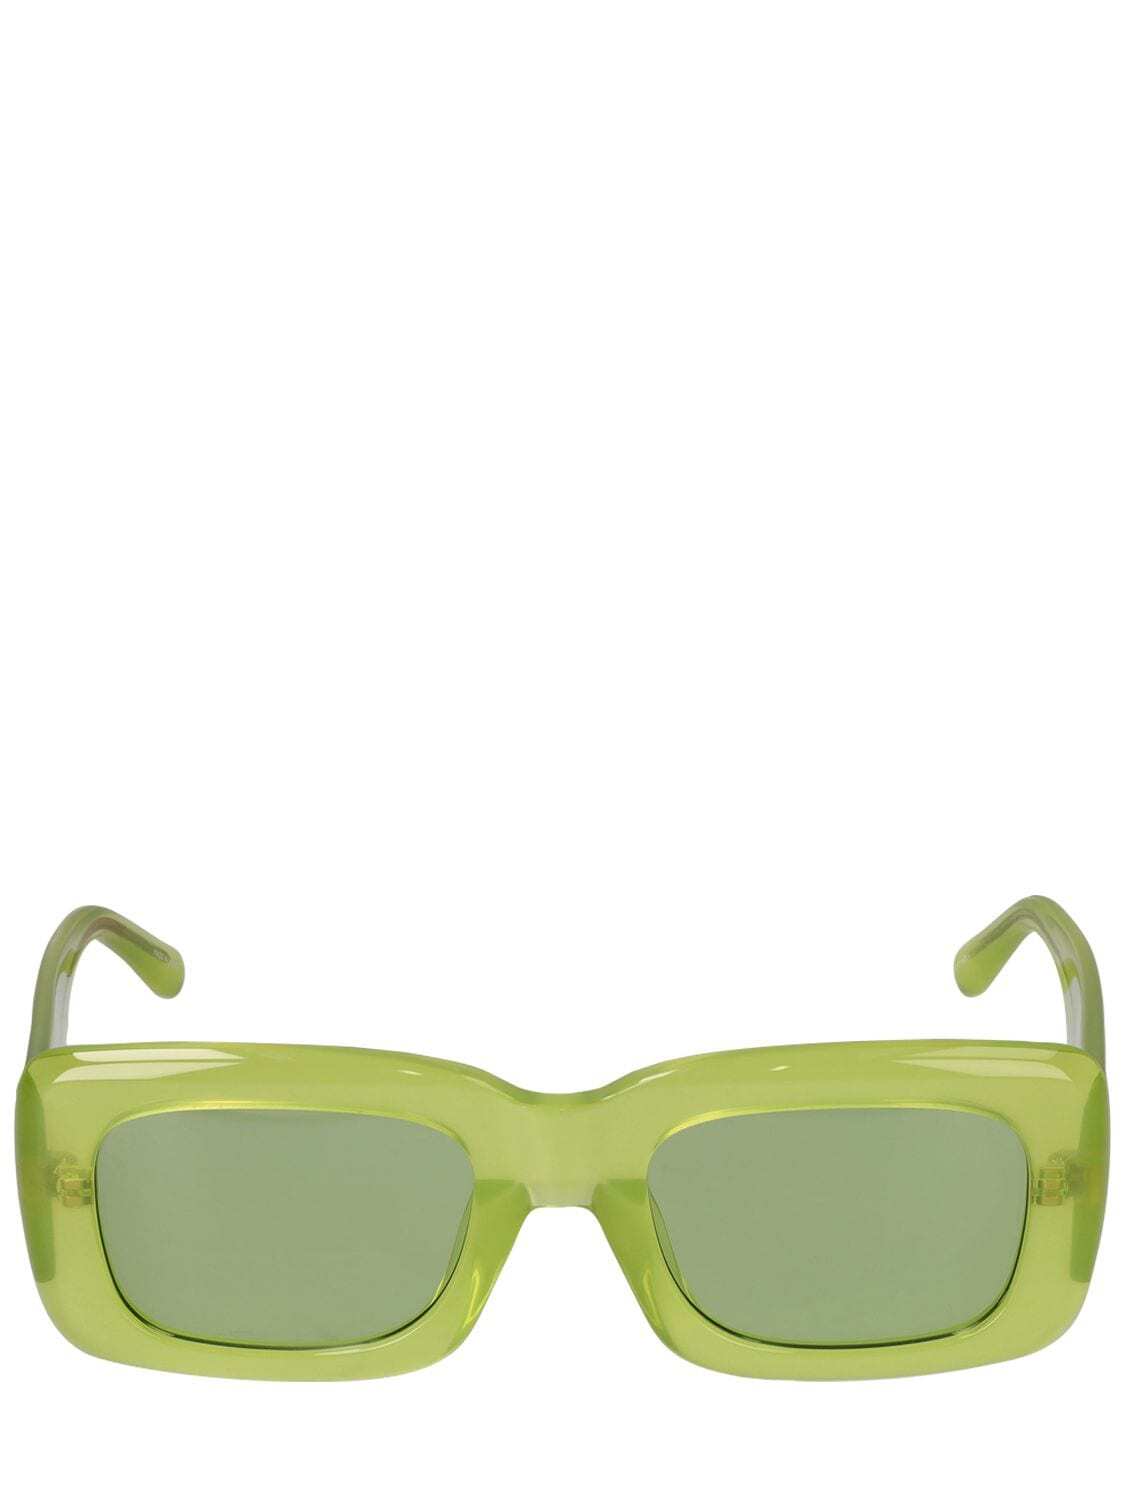 THE ATTICO Marfa Squared Acetate Sunglasses in green